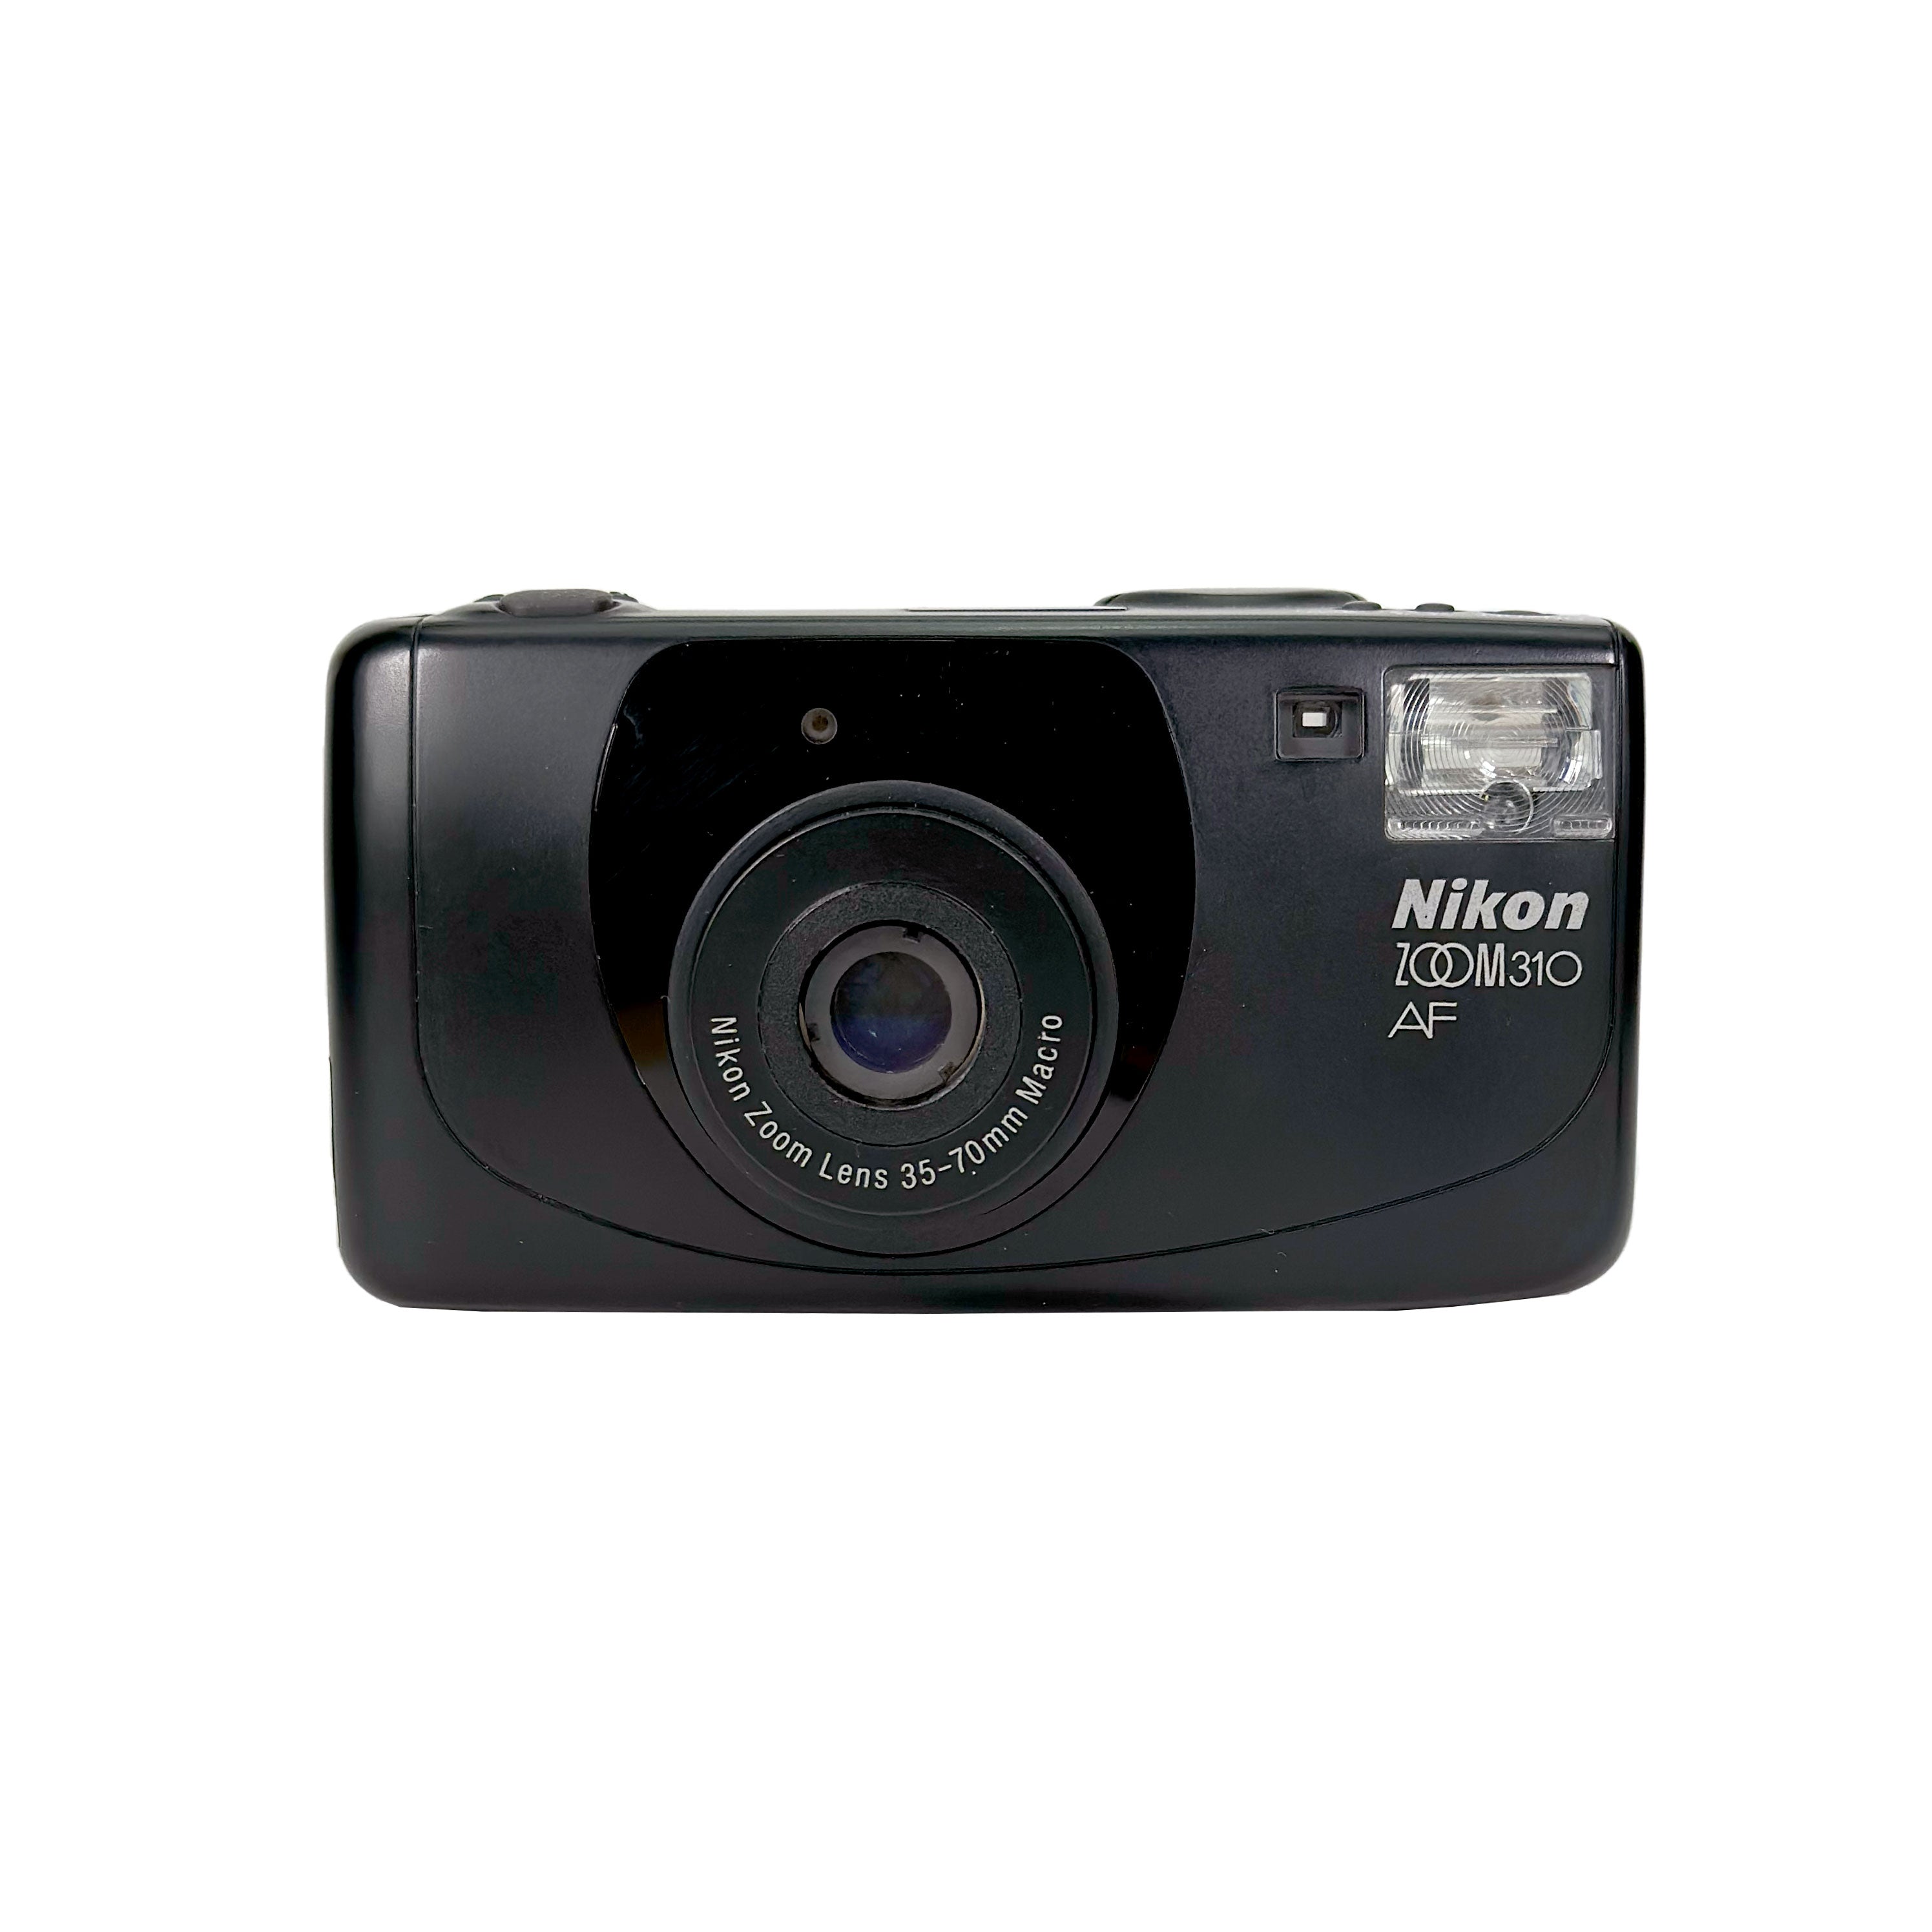 Nikon ZOOM310 AF - フィルムカメラ